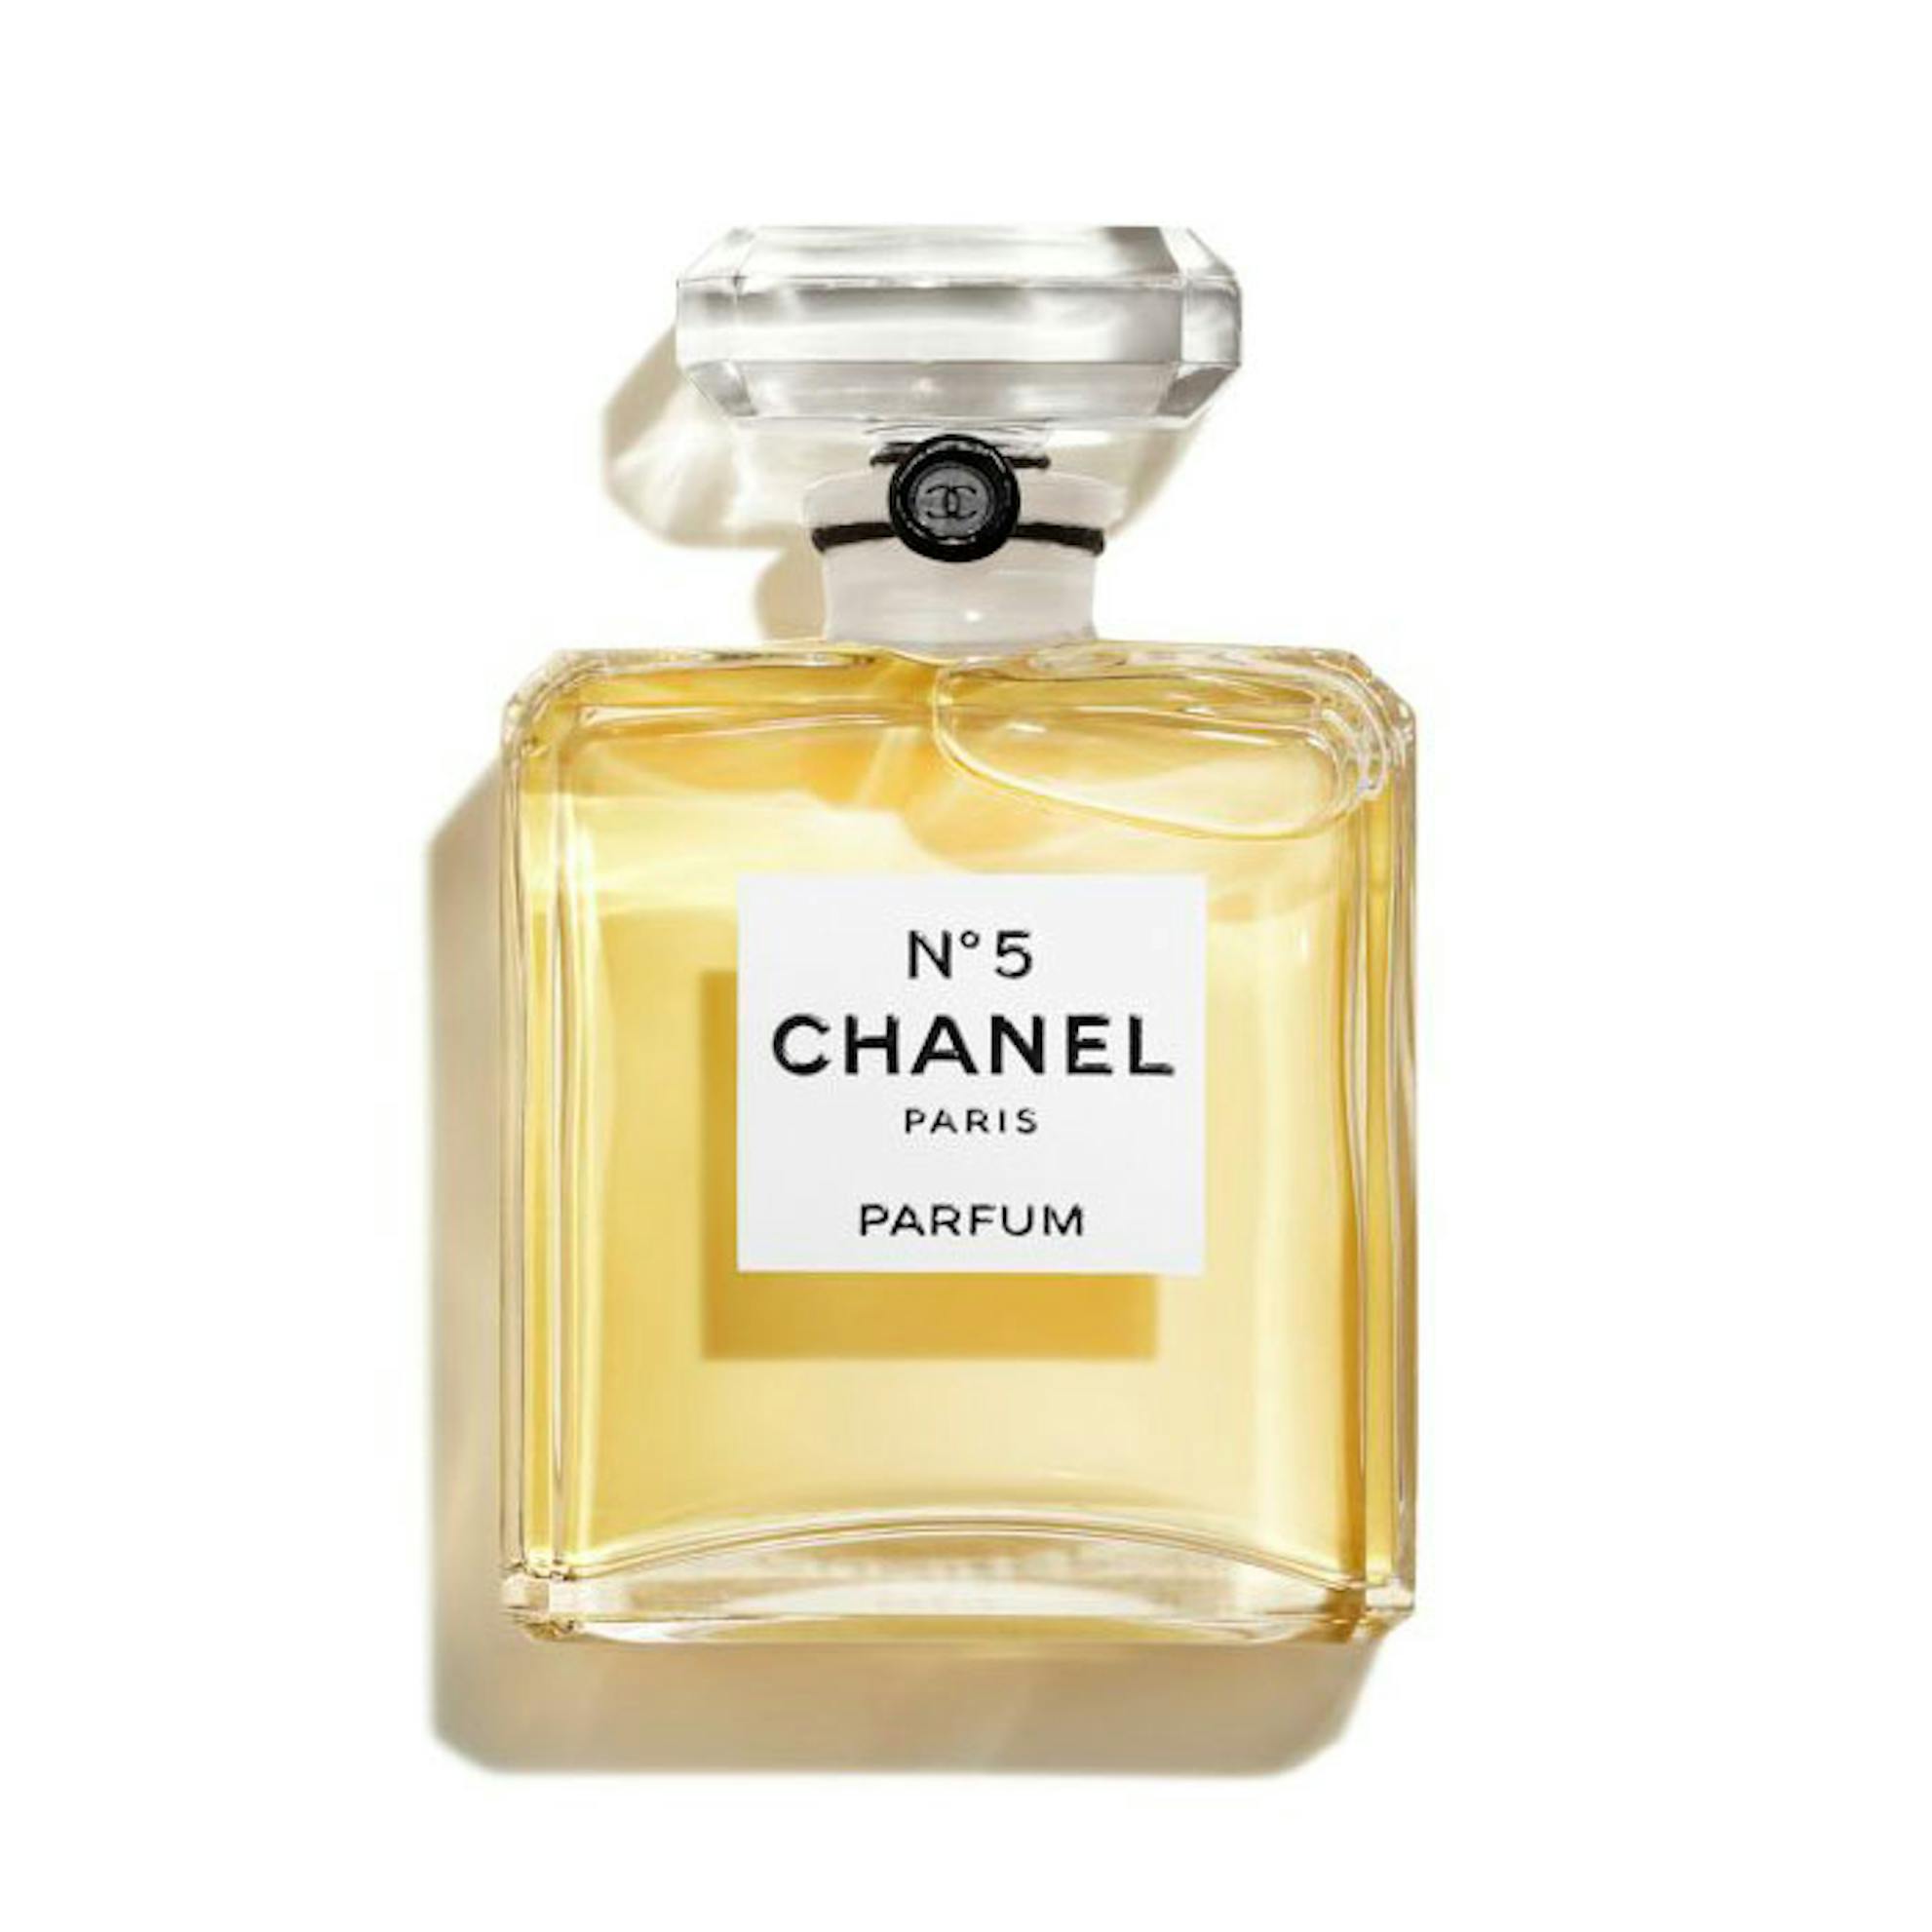 Chanel No. 5 by Chanel Twist and Spray Eau de Parfum Purse Spray 3 x 20 ml.  Brand new. Sealed. 